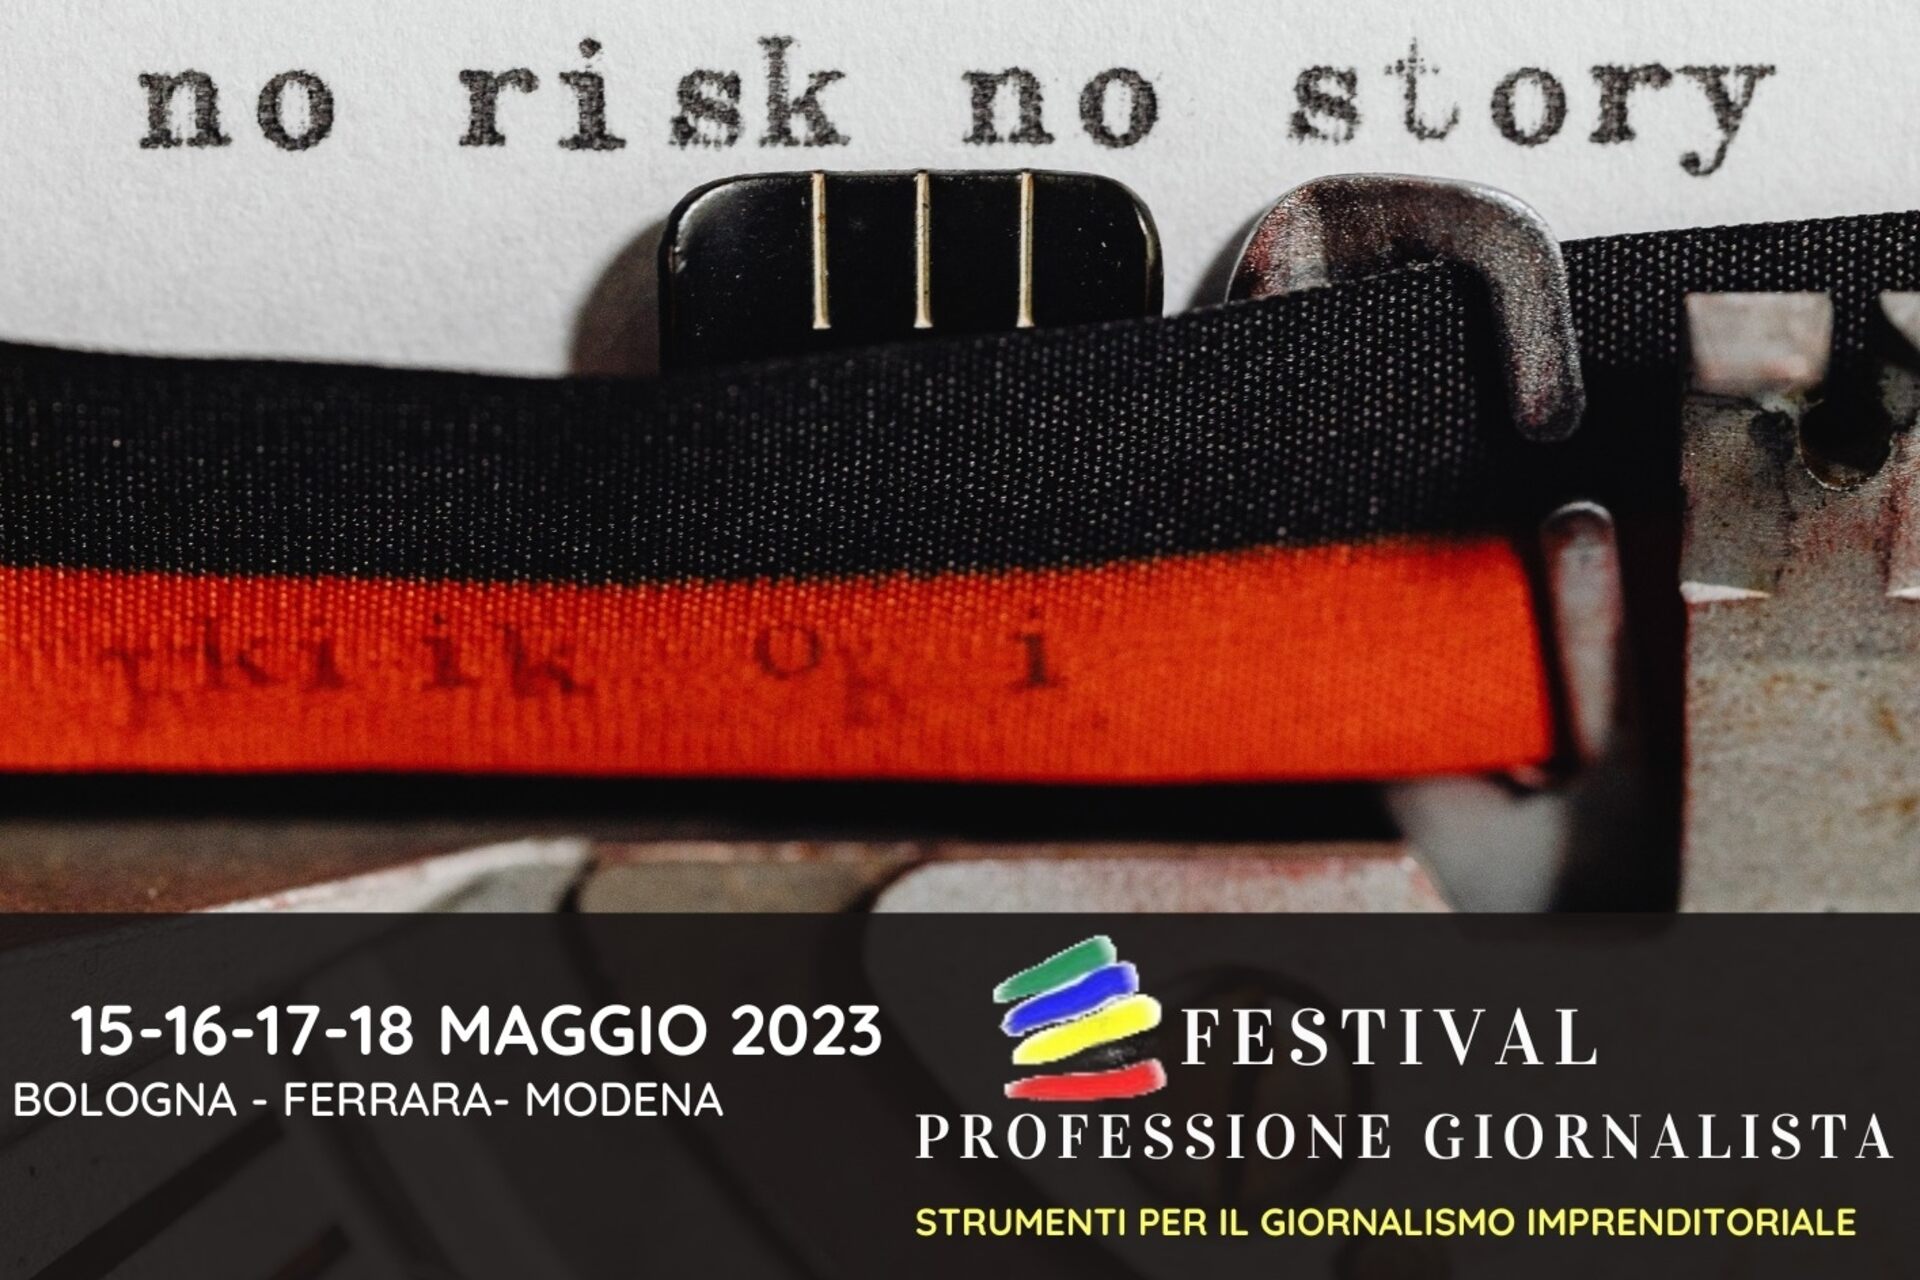 Starf blaðamanns: lykilmynd 2023 útgáfunnar af "Professione Giornalista" hátíðinni (Bologna, Ferrara, Modena, 15-16-17-18 maí)